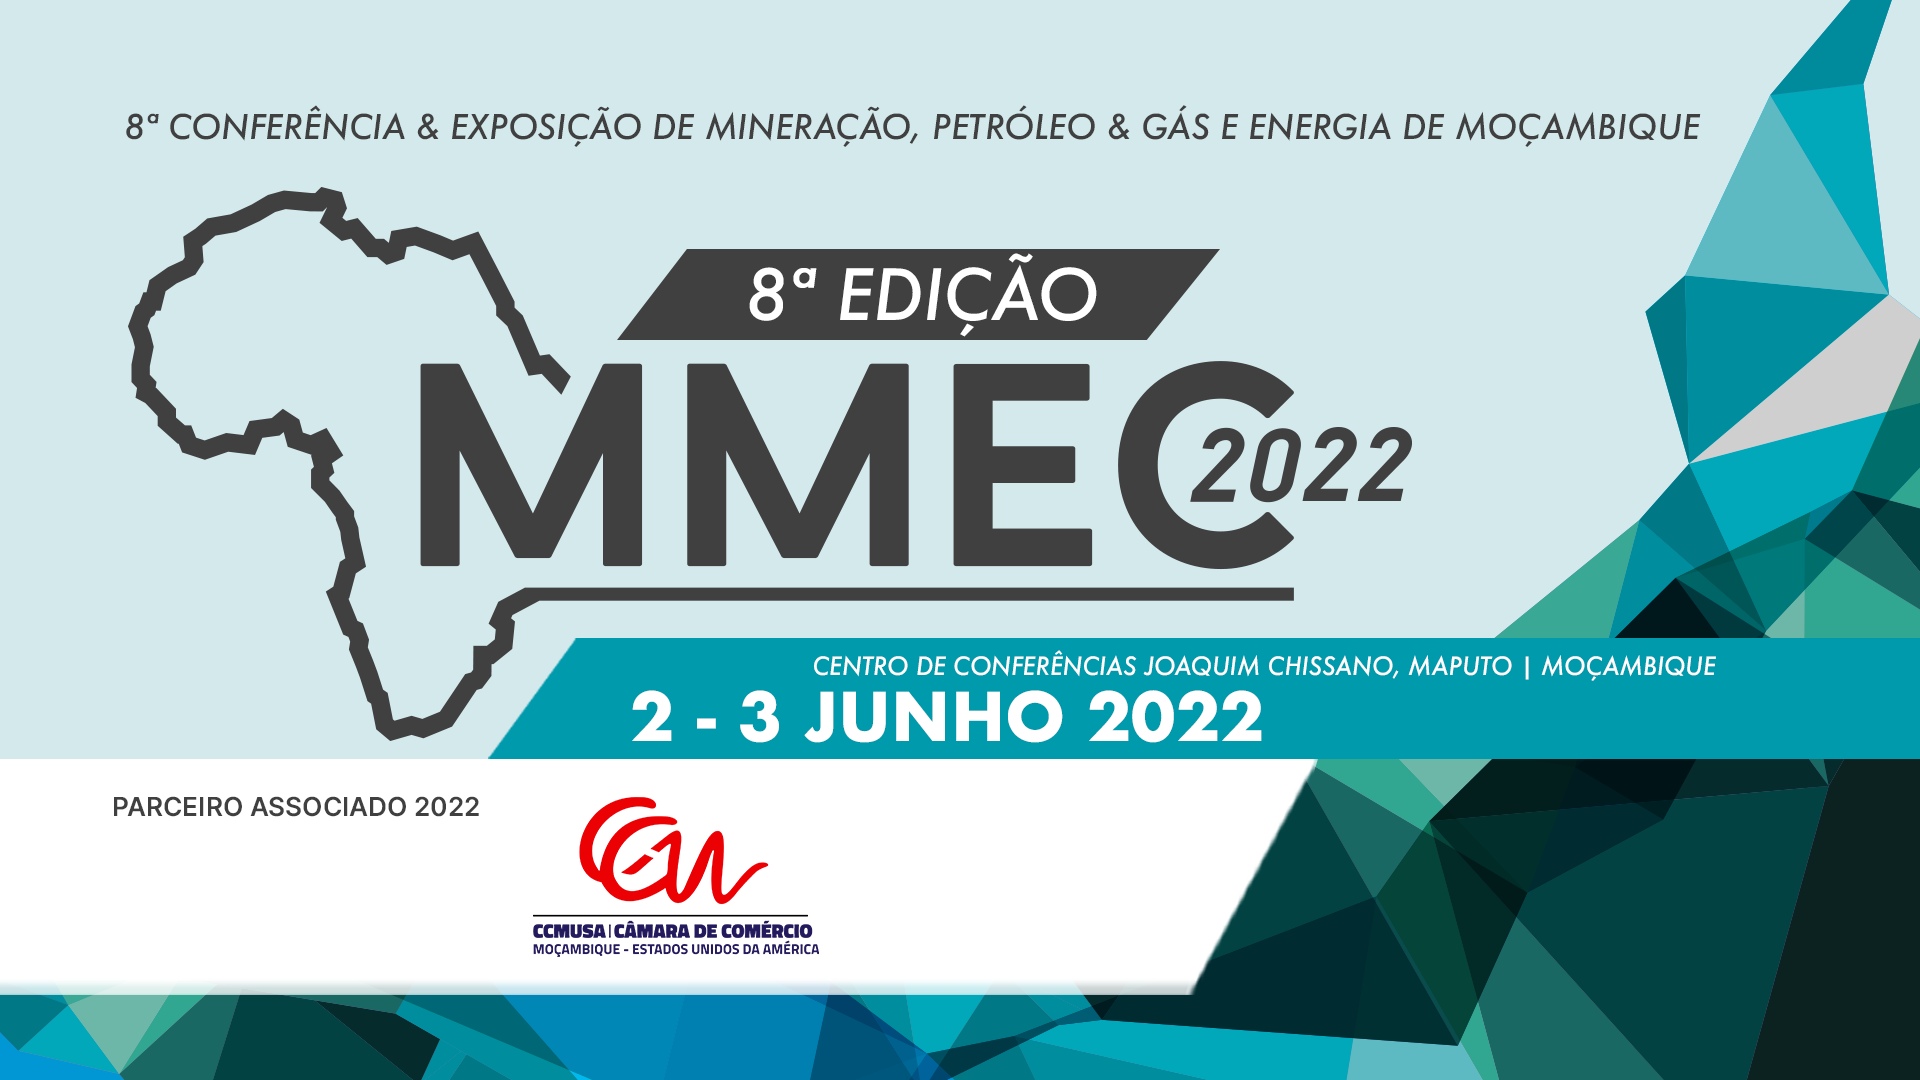 8ª Conferência & Exposição de Mineração, Petróleo & Gás e Energia de Moçambique